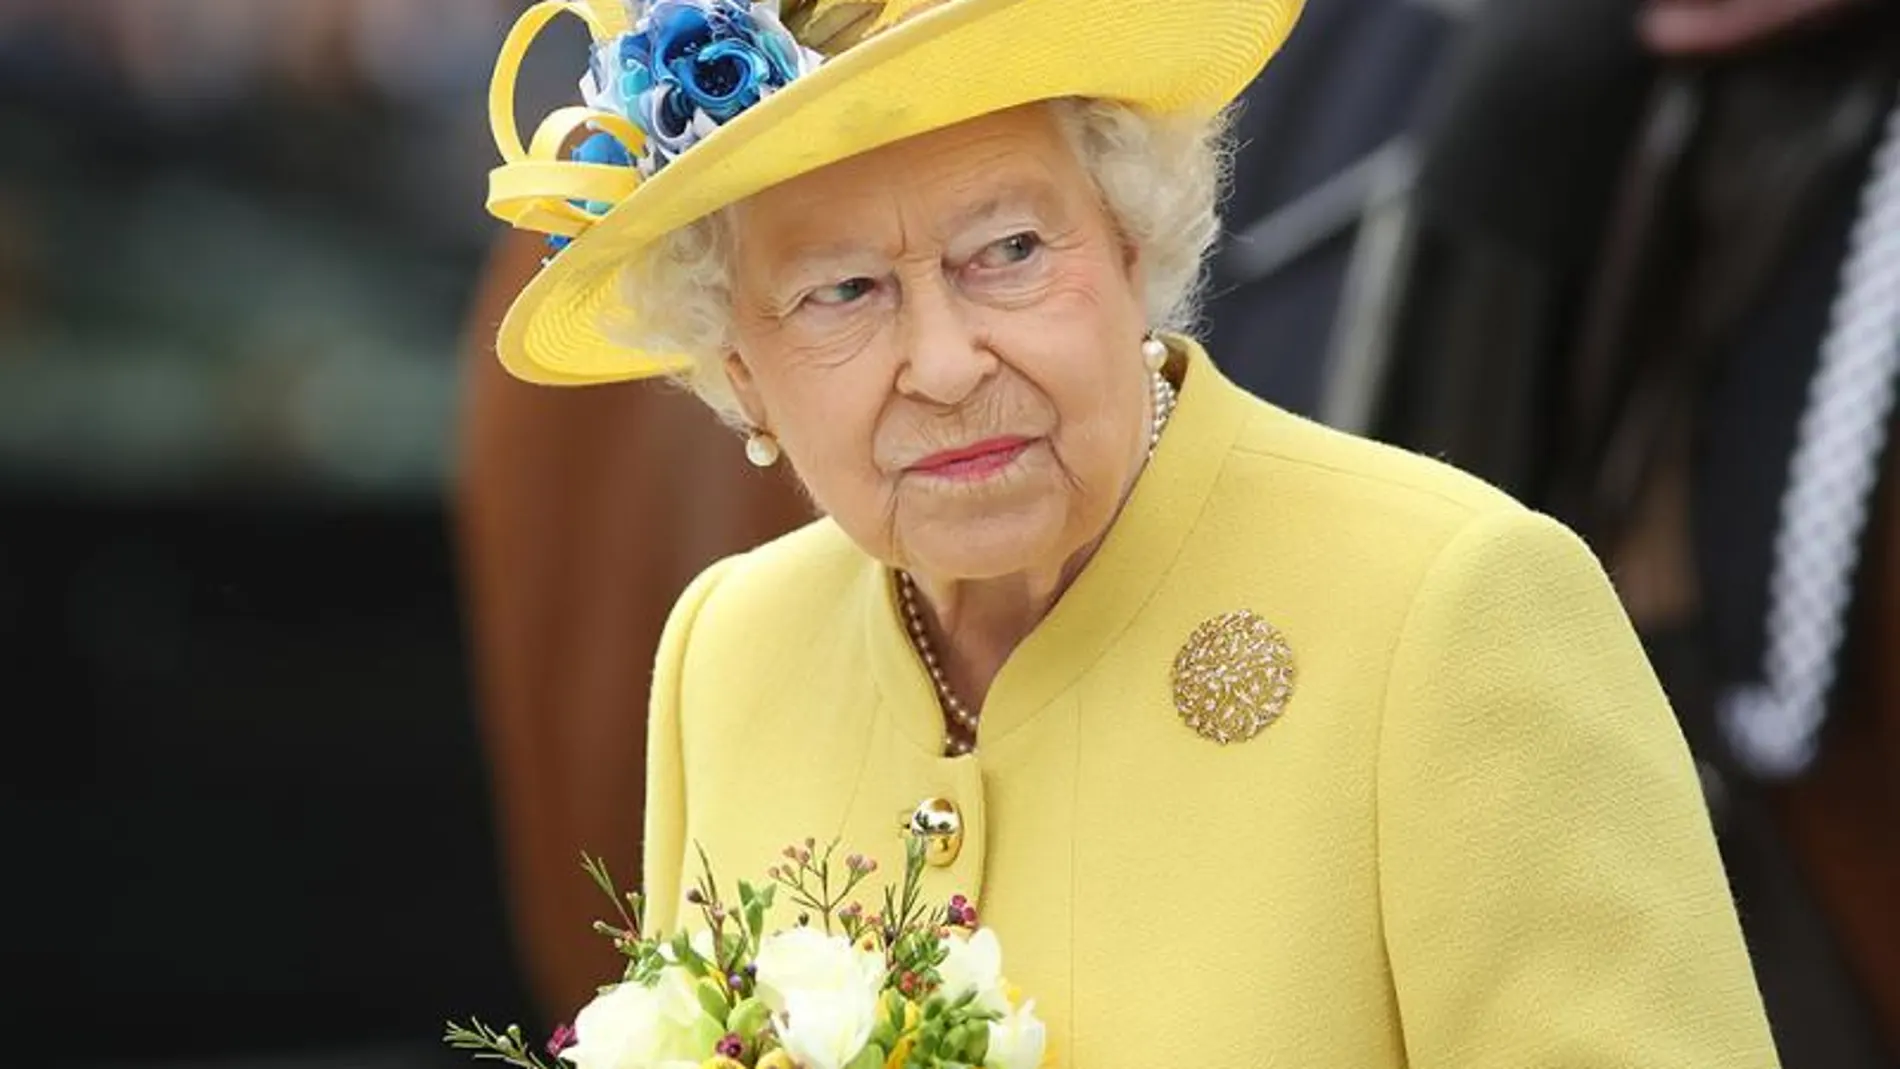 La Reina Isabel I cancela su asistencia a un acto por motivos de salud